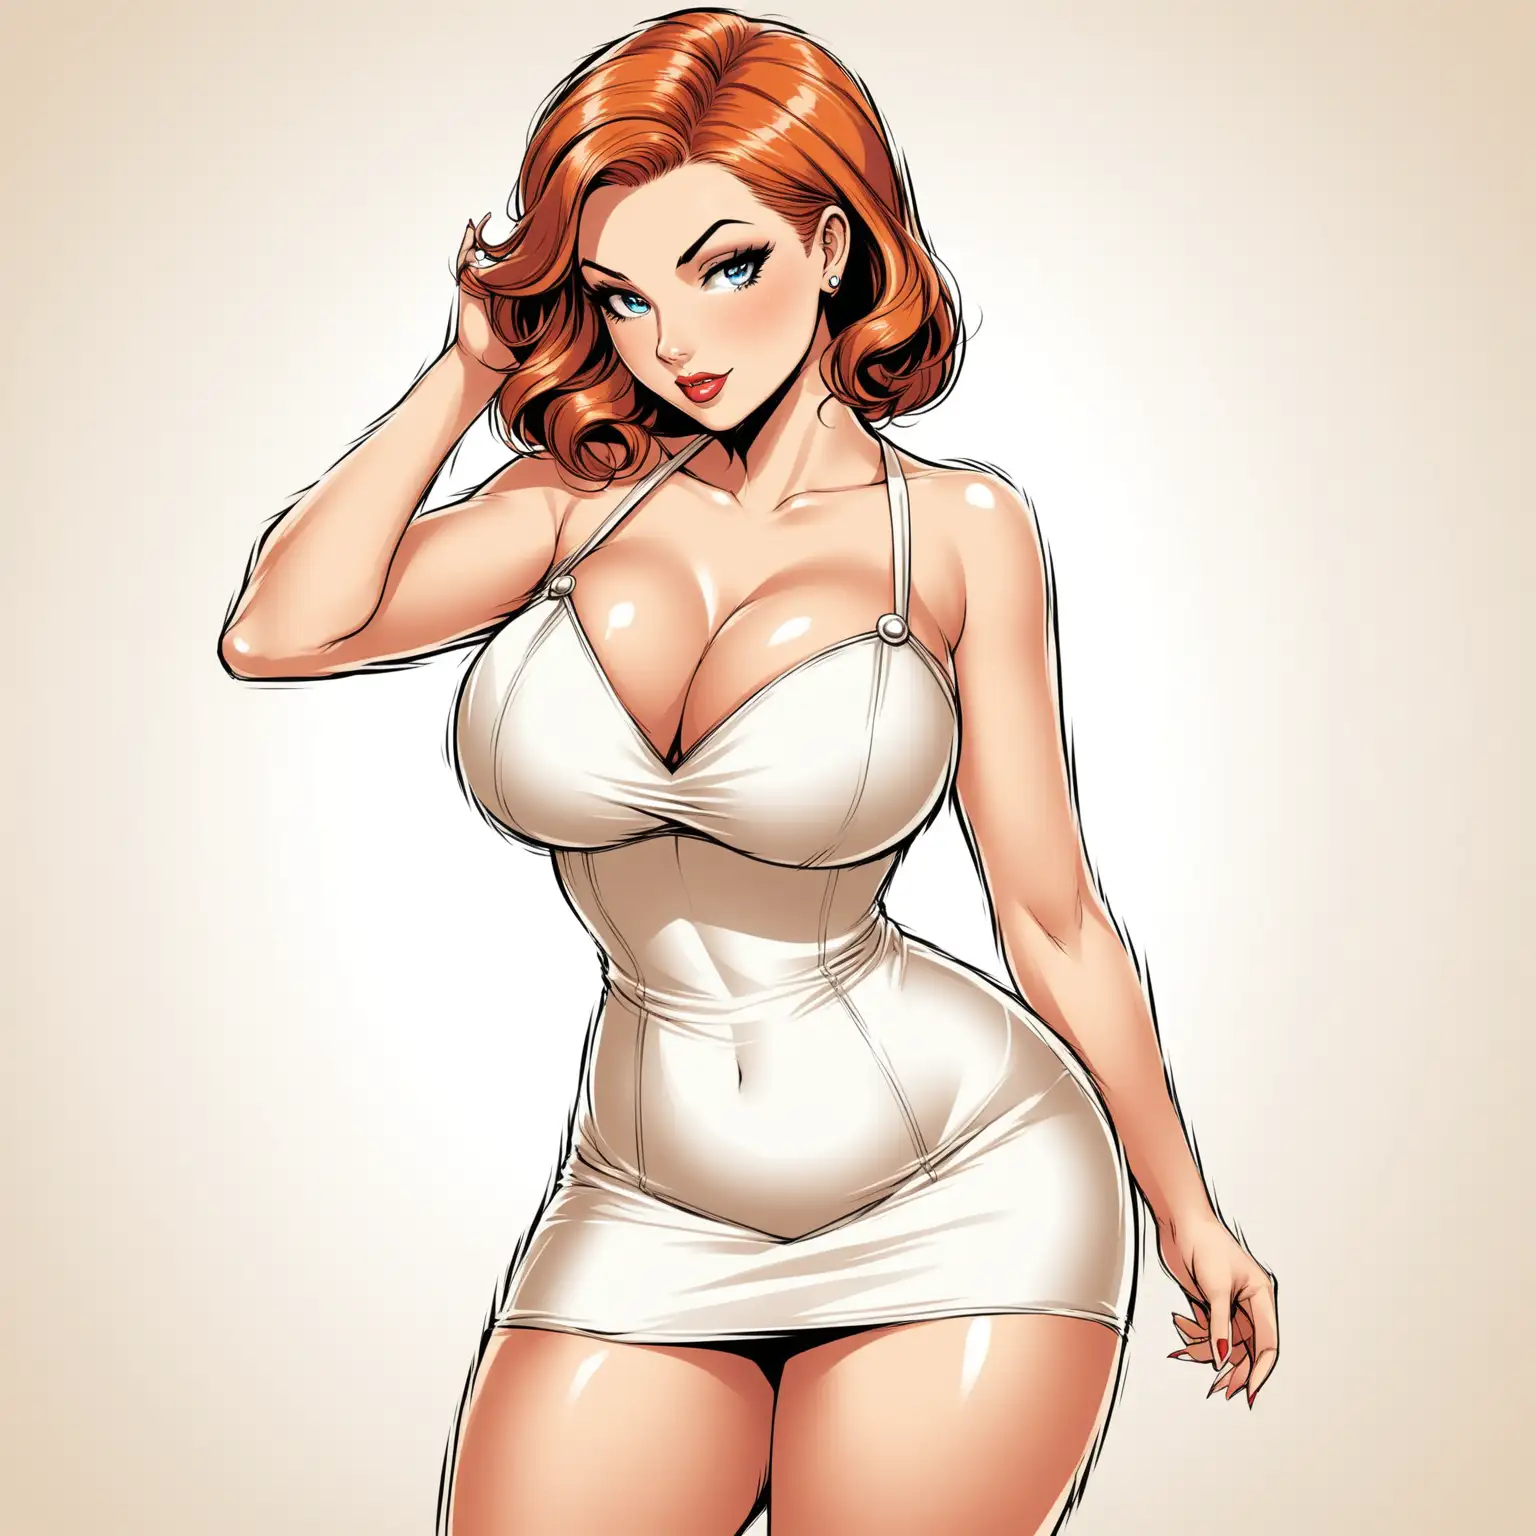 dans un style bande dessinée :
une femme élégante au trait de la pin up melissa debling qui porte un robe courte blanche avec un décolleté en v qui montre ses formes.
sur un fond blanc.